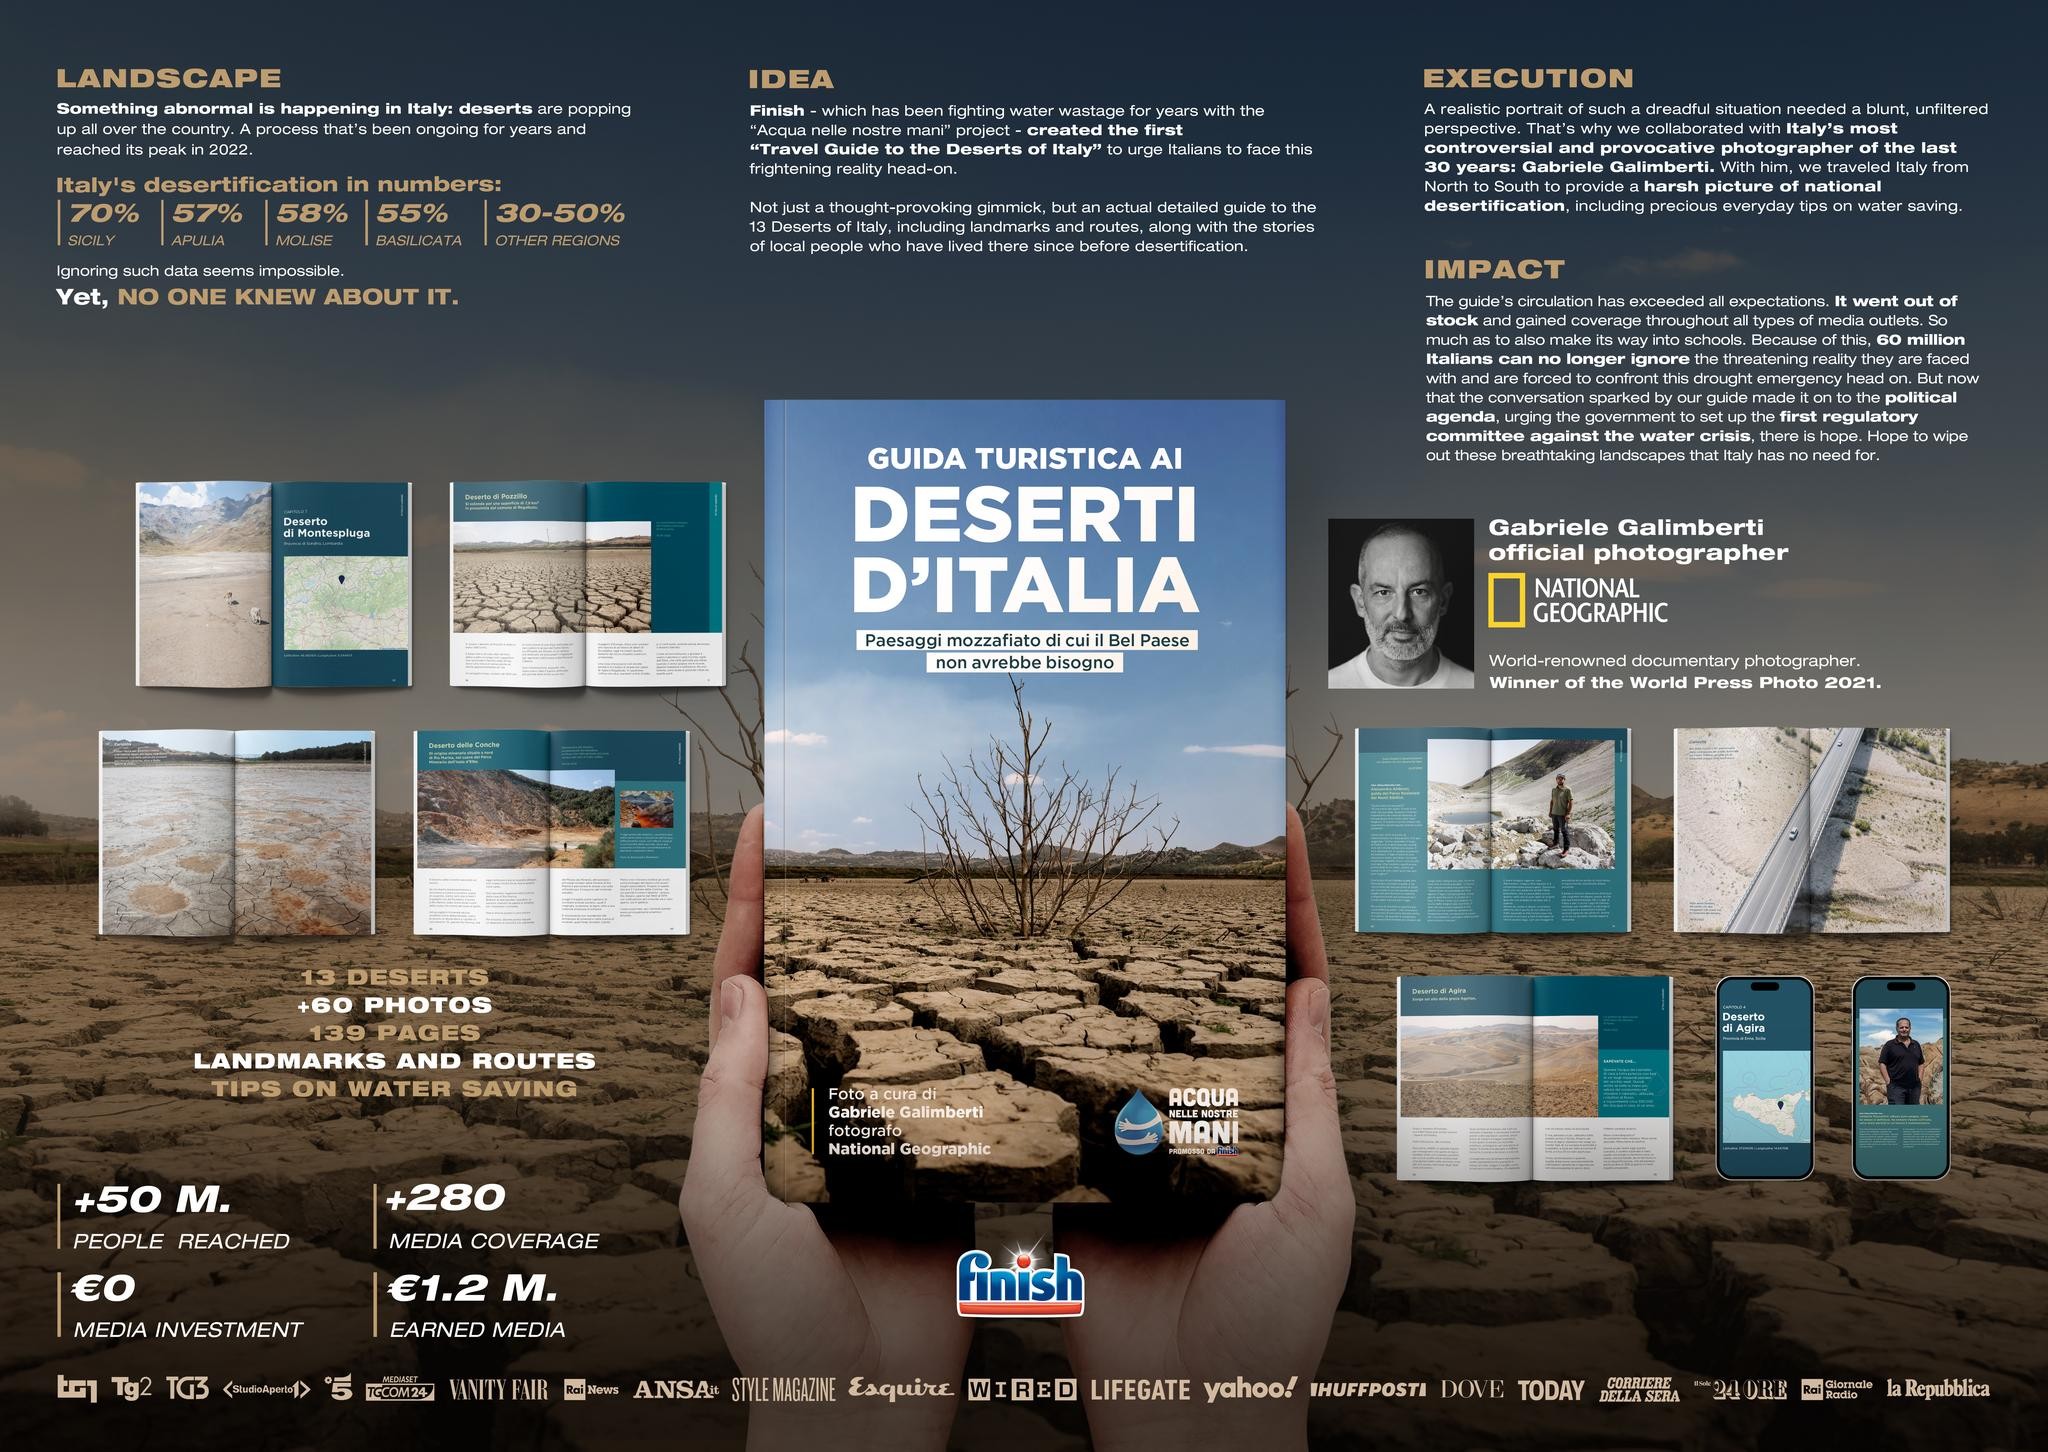 Guida Turistica ai Deserti d'Italia (Travel Guide to the Deserts of Italy)